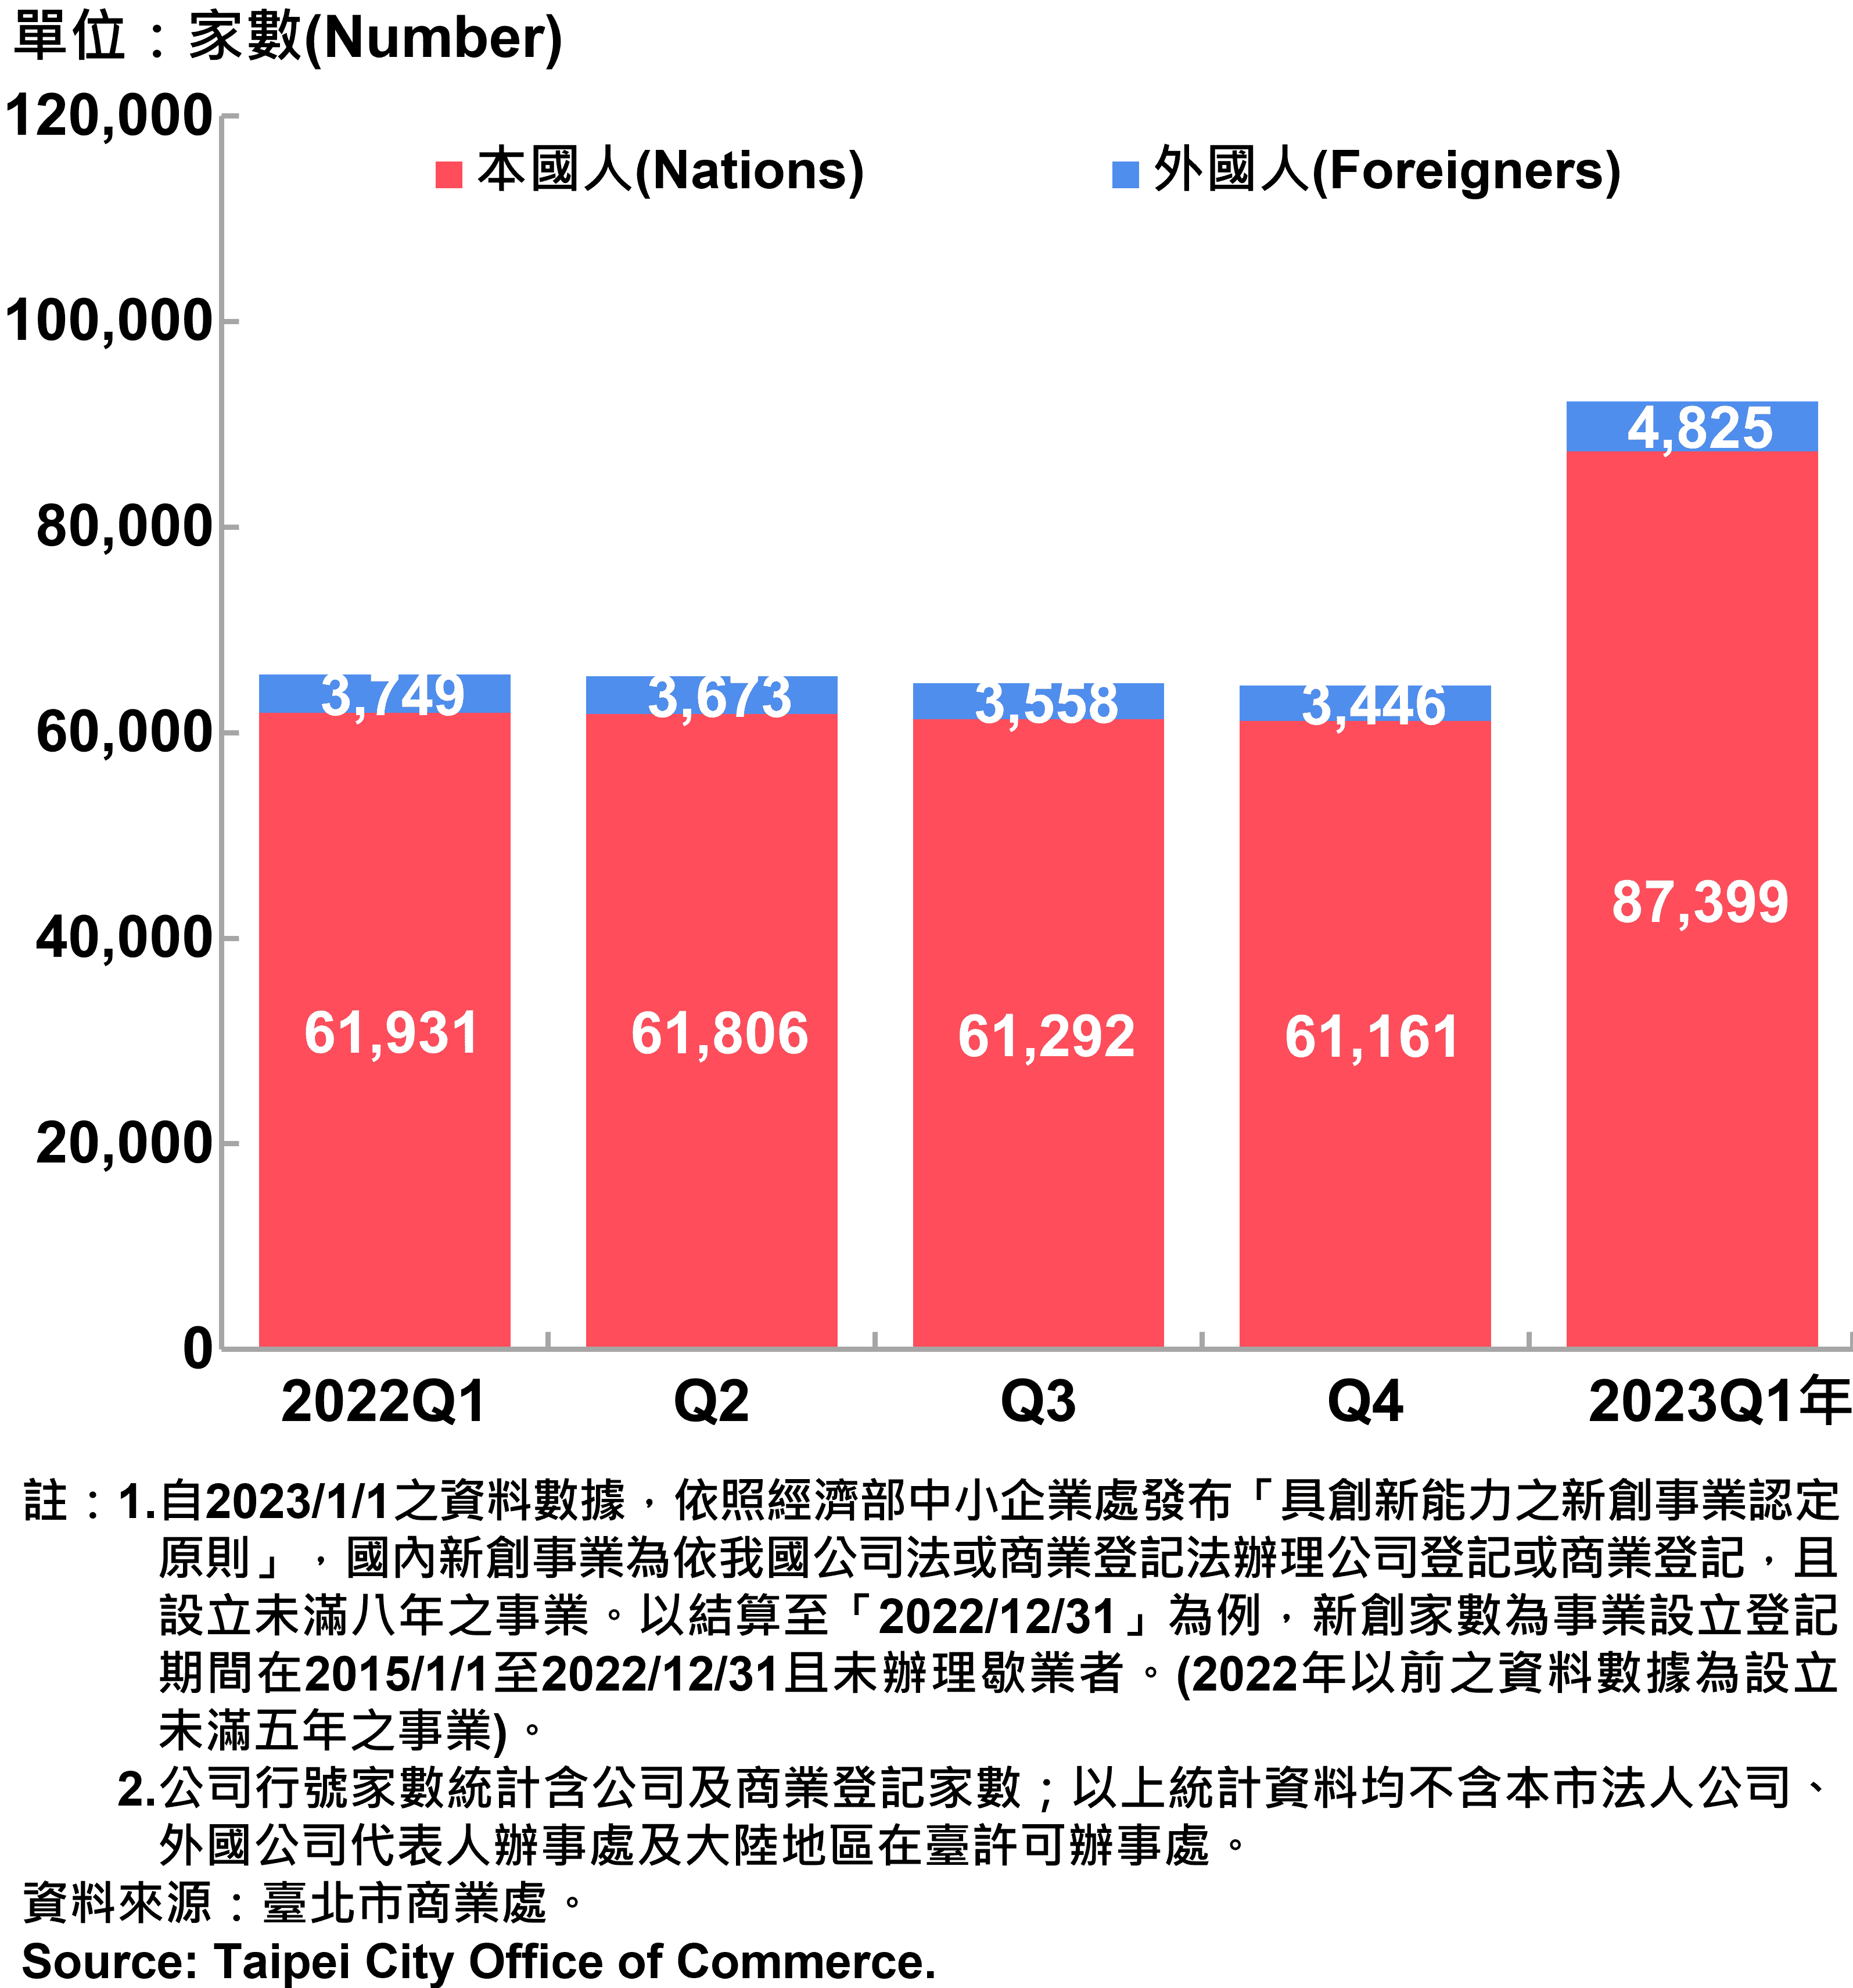 臺北市新創公司行號負責人-本國人與外國人分布情形-現存家數—2023Q1 Responsible Person of Newly Registered Companies In Taipei City by Nationality - Number of Current—2023Q1